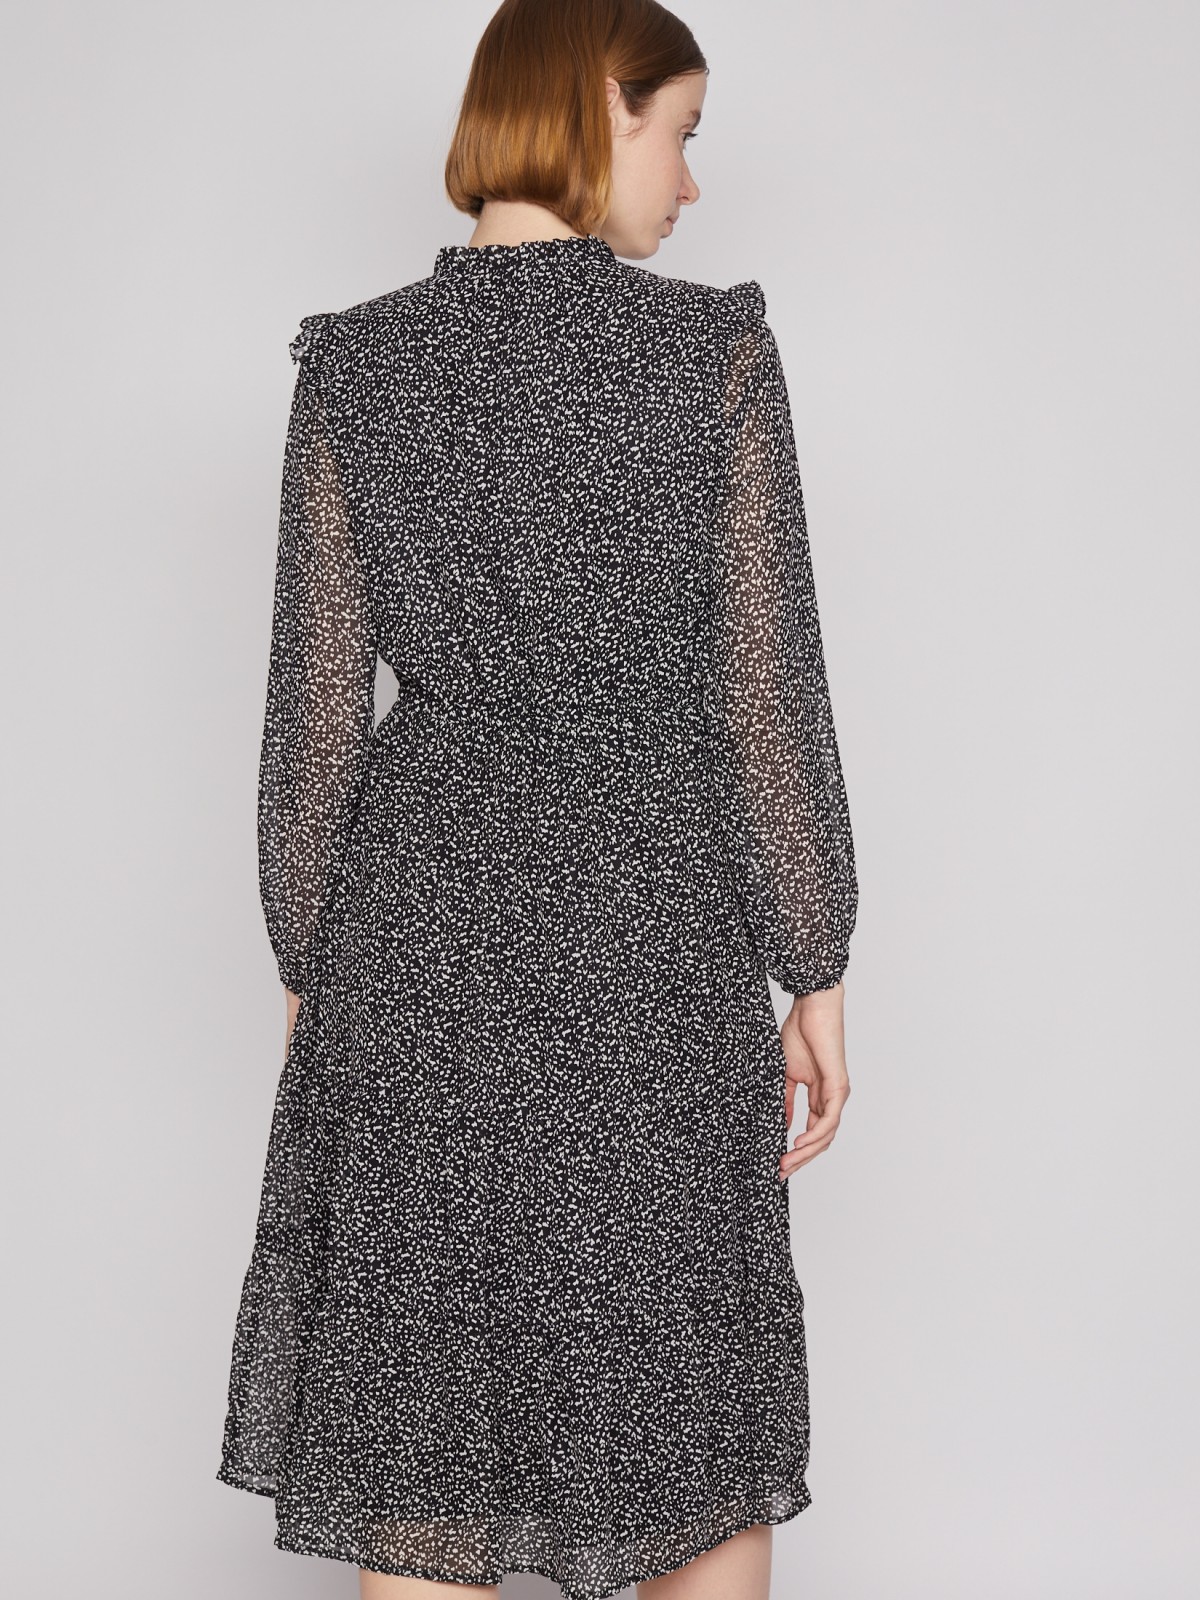 Шифоновое платье миди с длинным рукавом zolla 02213824Y133, цвет черный, размер XS - фото 5